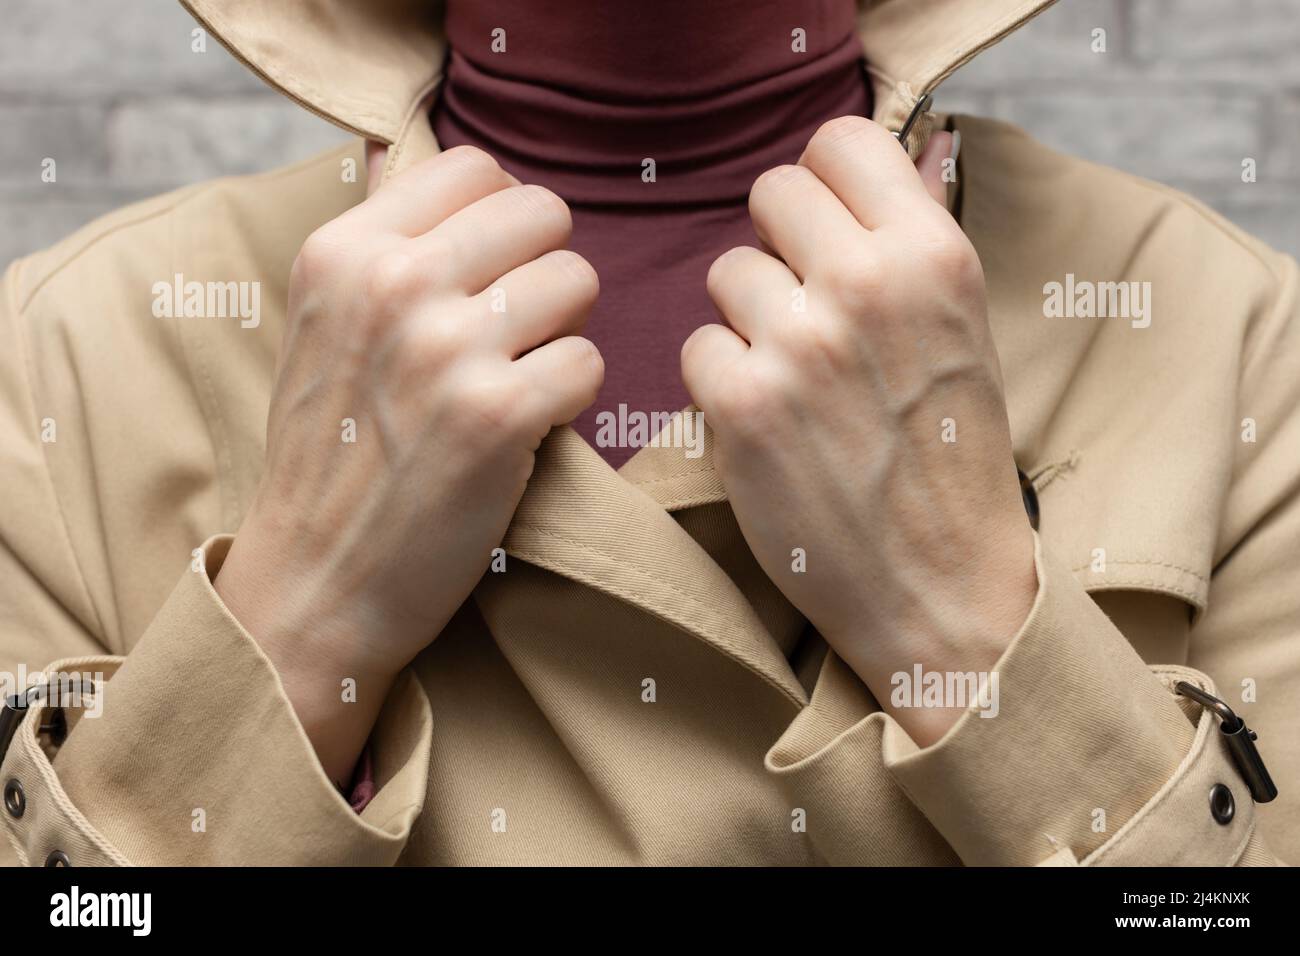 Eine Frau in einem Regenmantel legt ihre Hand auf den Revers ihres Kragens. Hochwertige Fotos Stockfoto